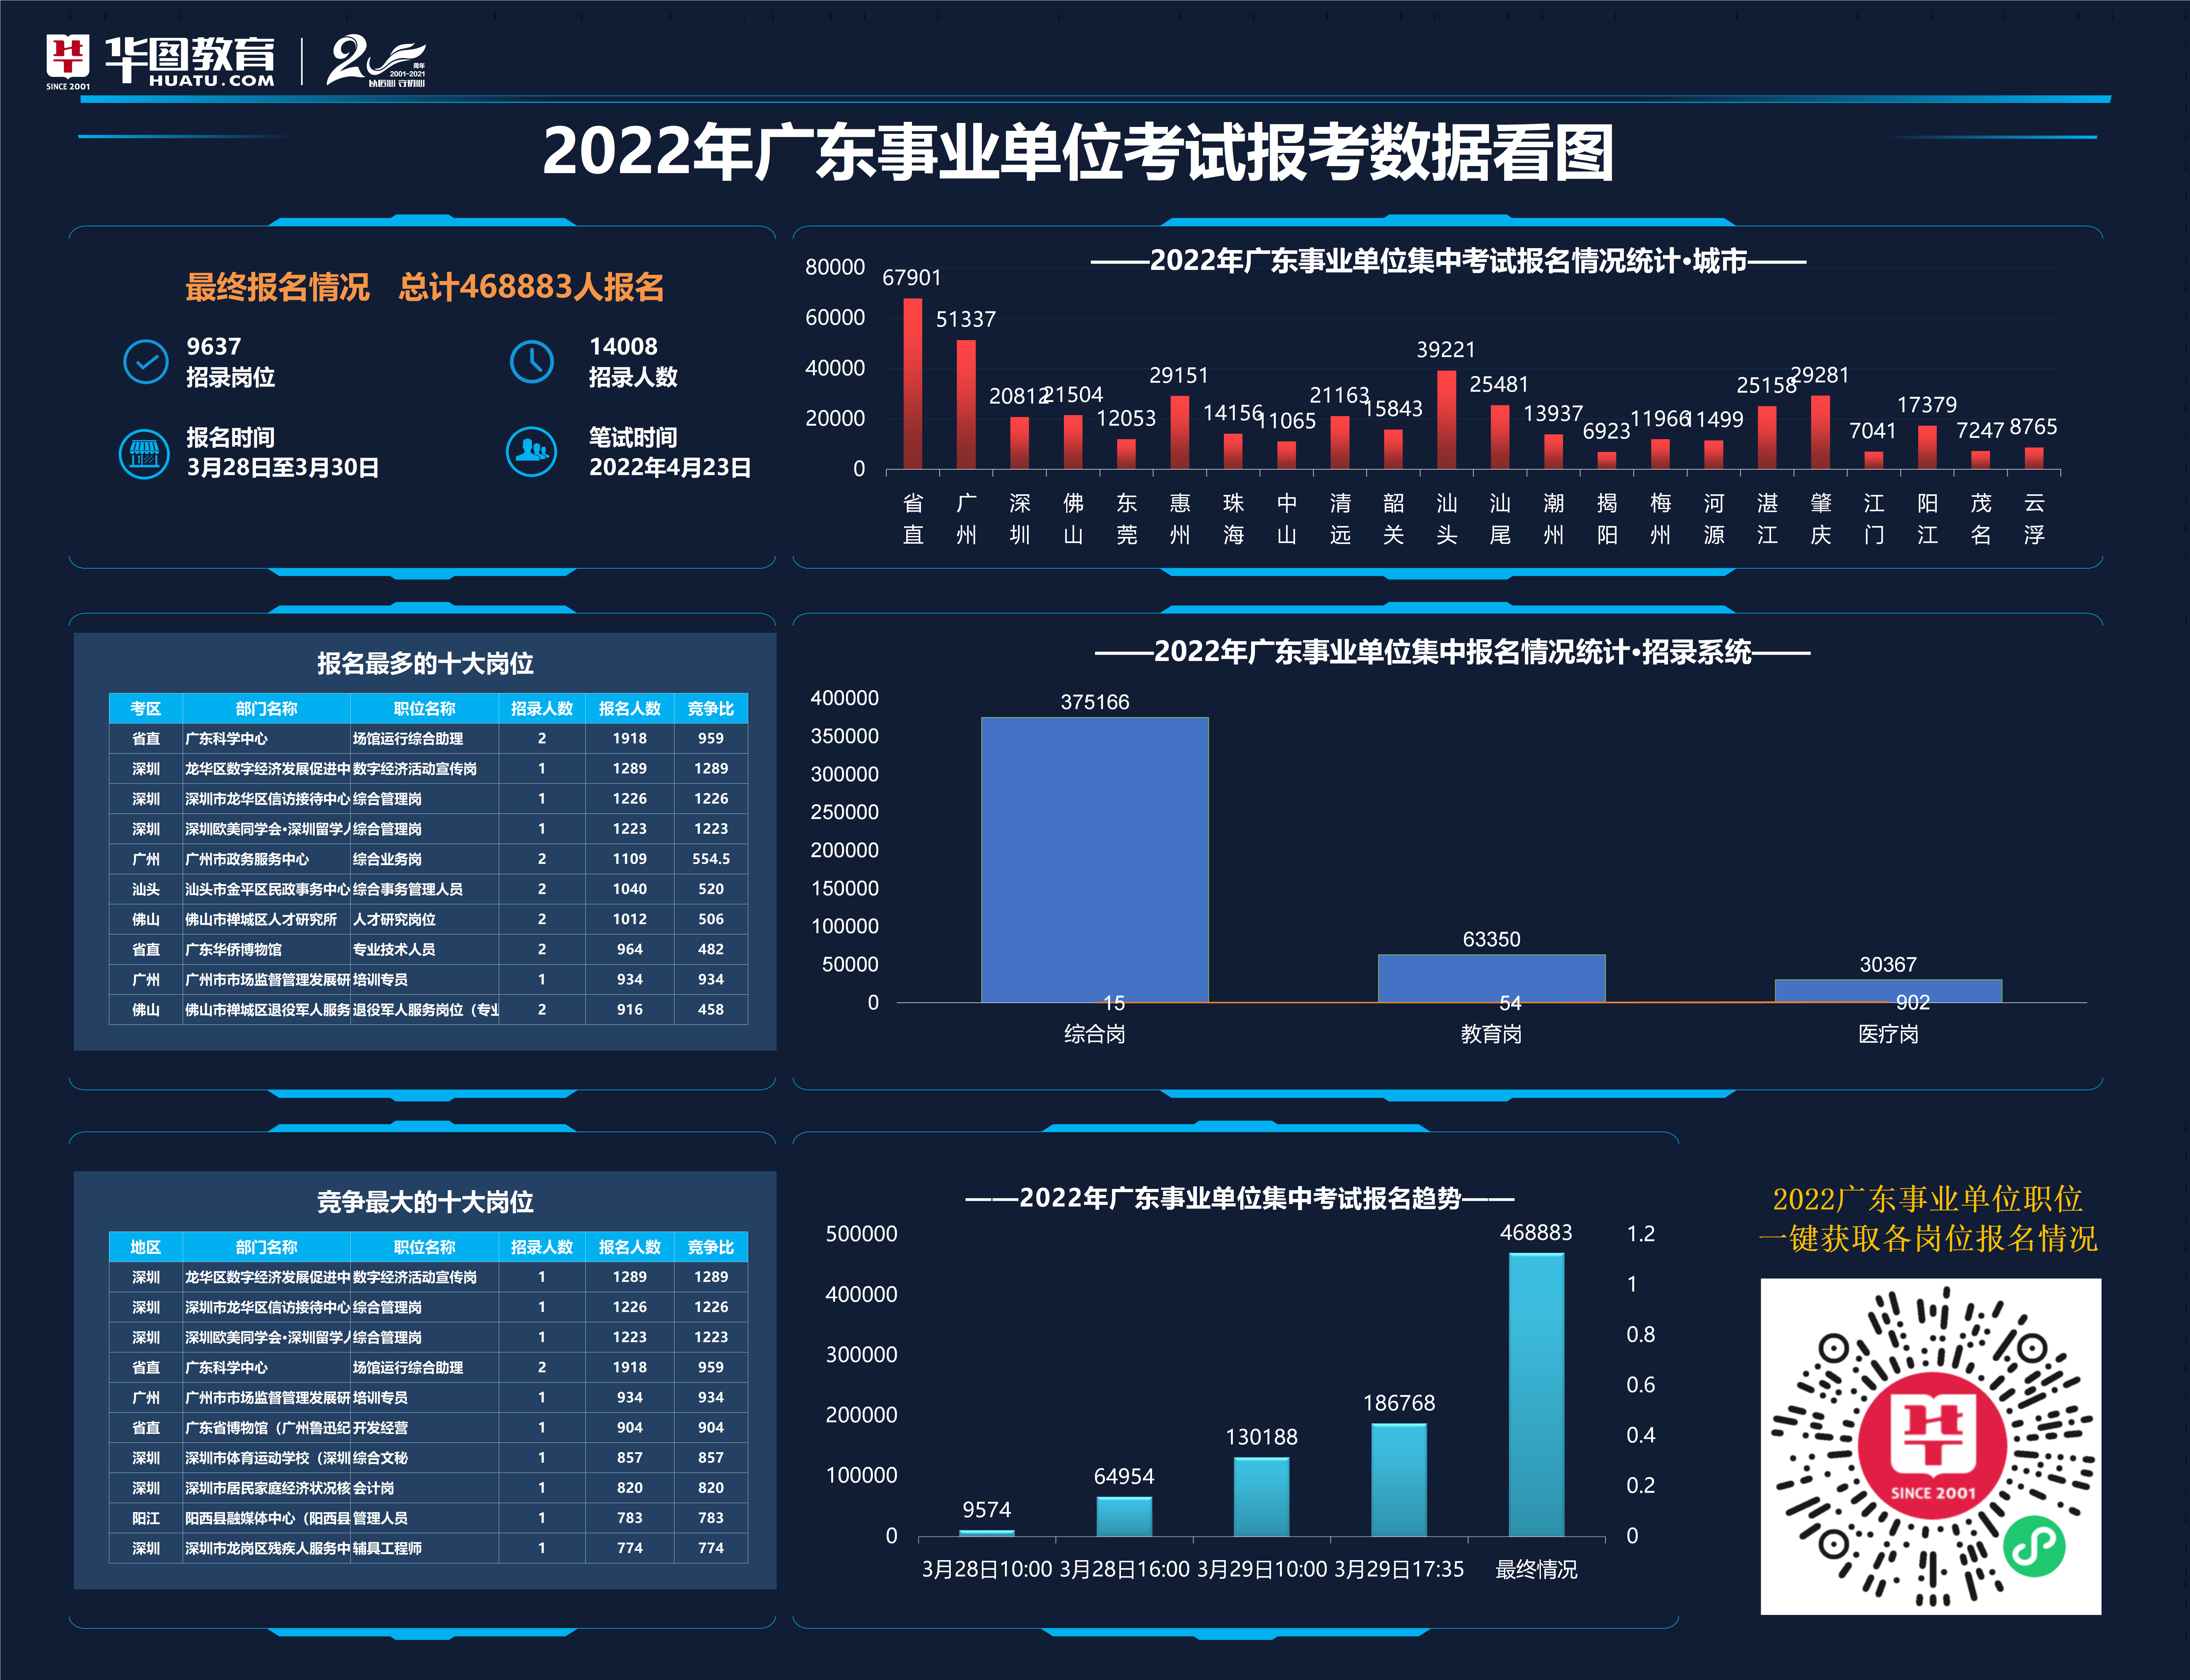 2022年广东事业单位集中招聘最终报名人数统计：468883人报名，平均竞争比33.47:1